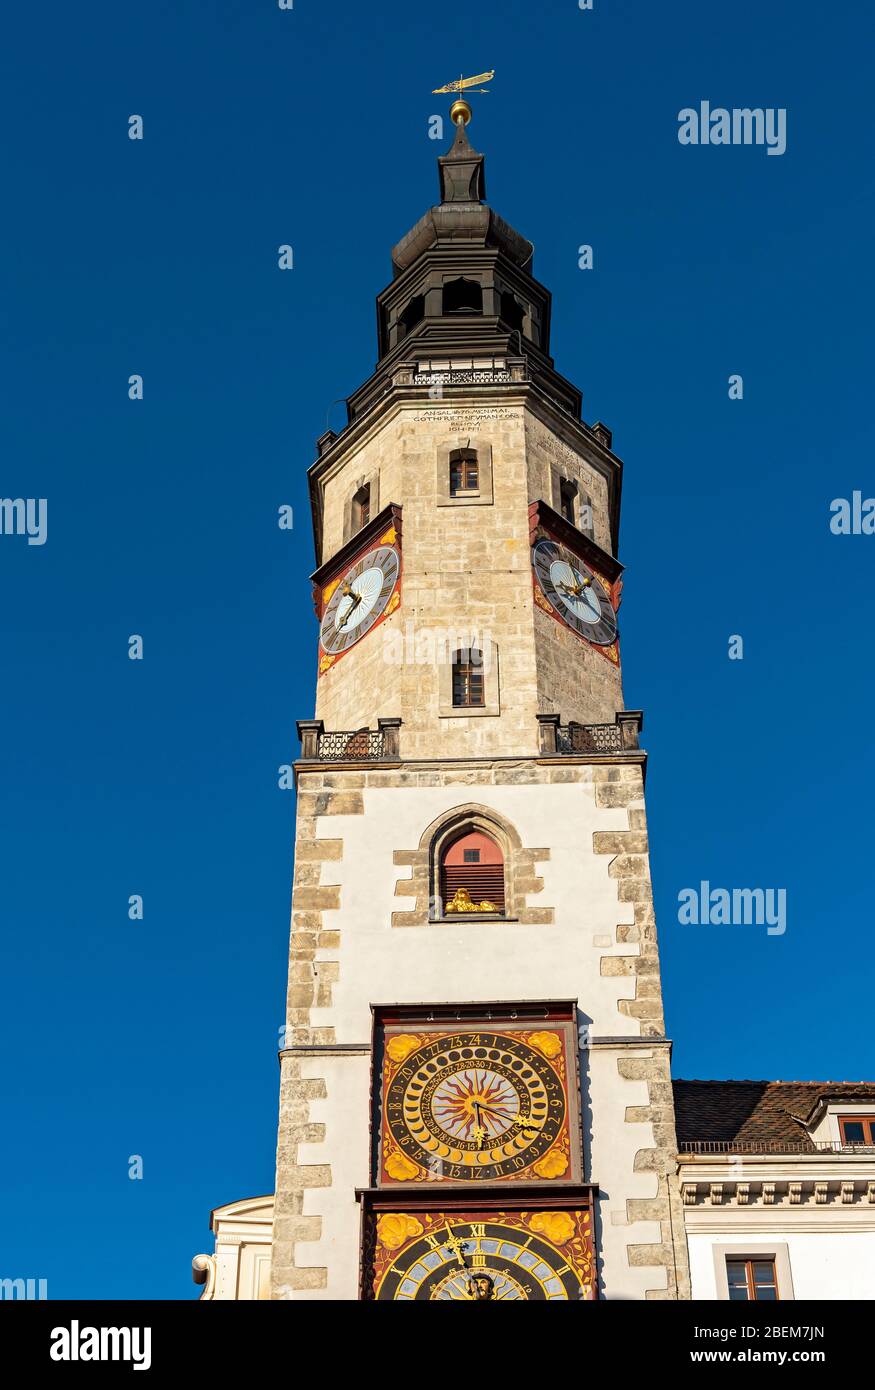 Ancienne Hôtel de Ville (Altes Rathaus) Tour avec horloge de phase de Lune, Görlitz (Goerlitz), Allemagne Banque D'Images